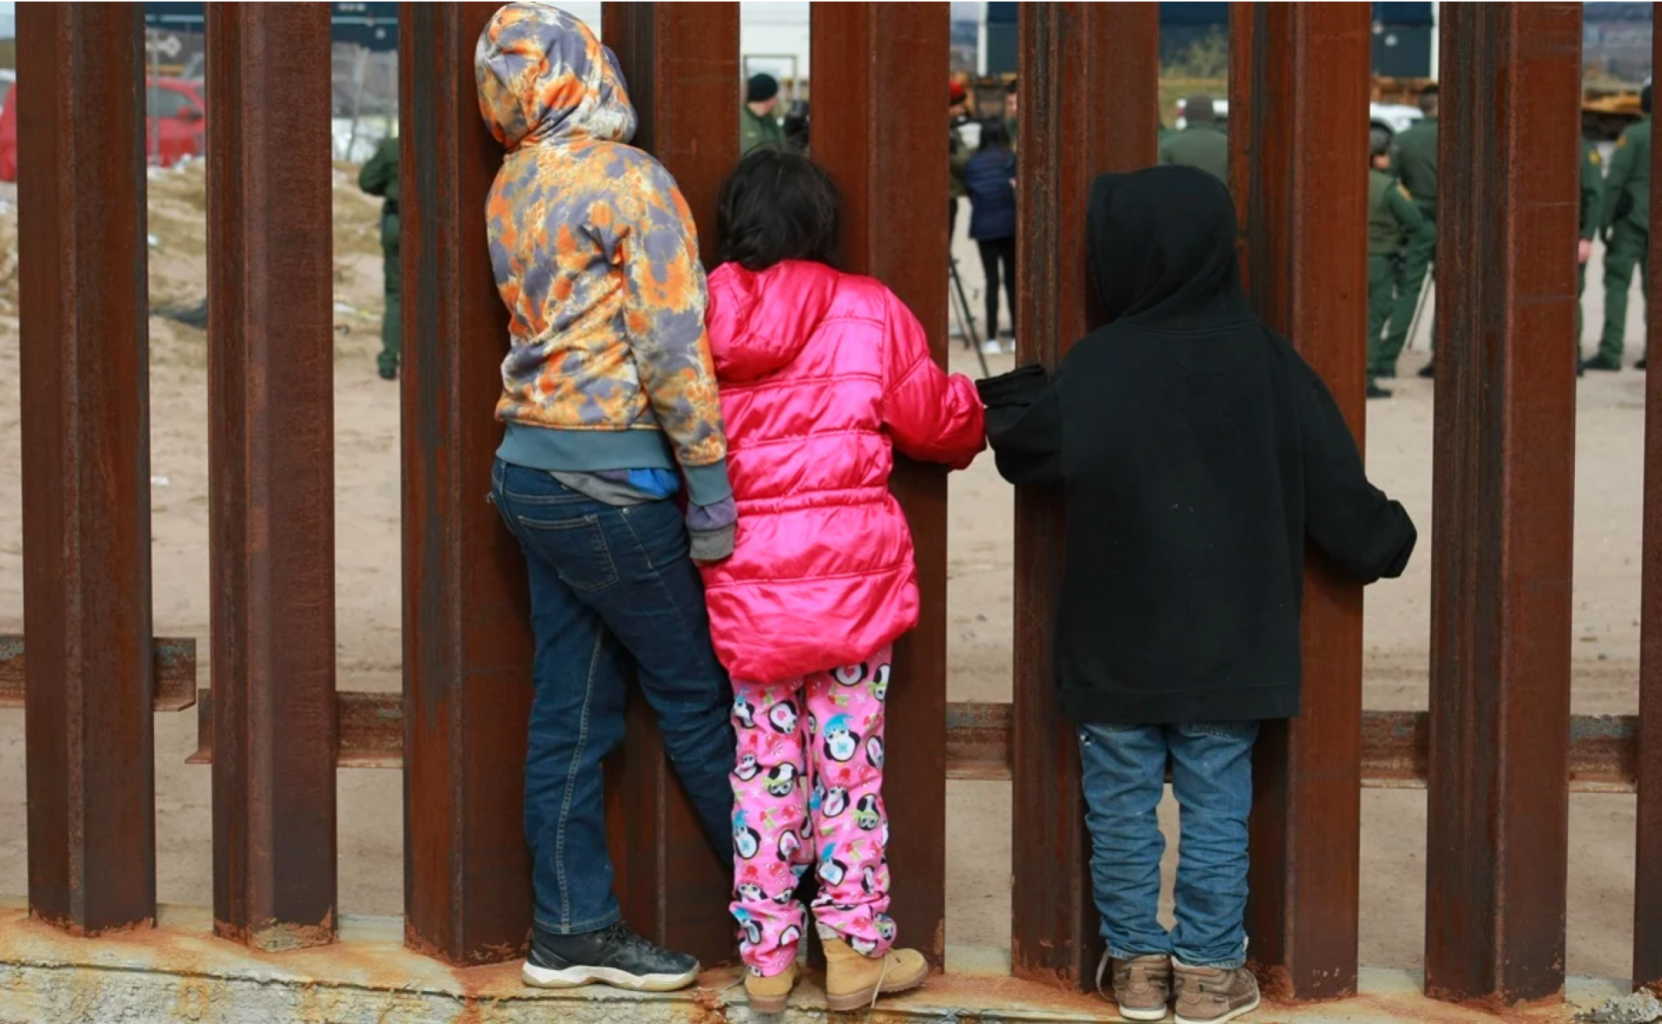 Juez ordena detener expulsión de niños que cruzan frontera